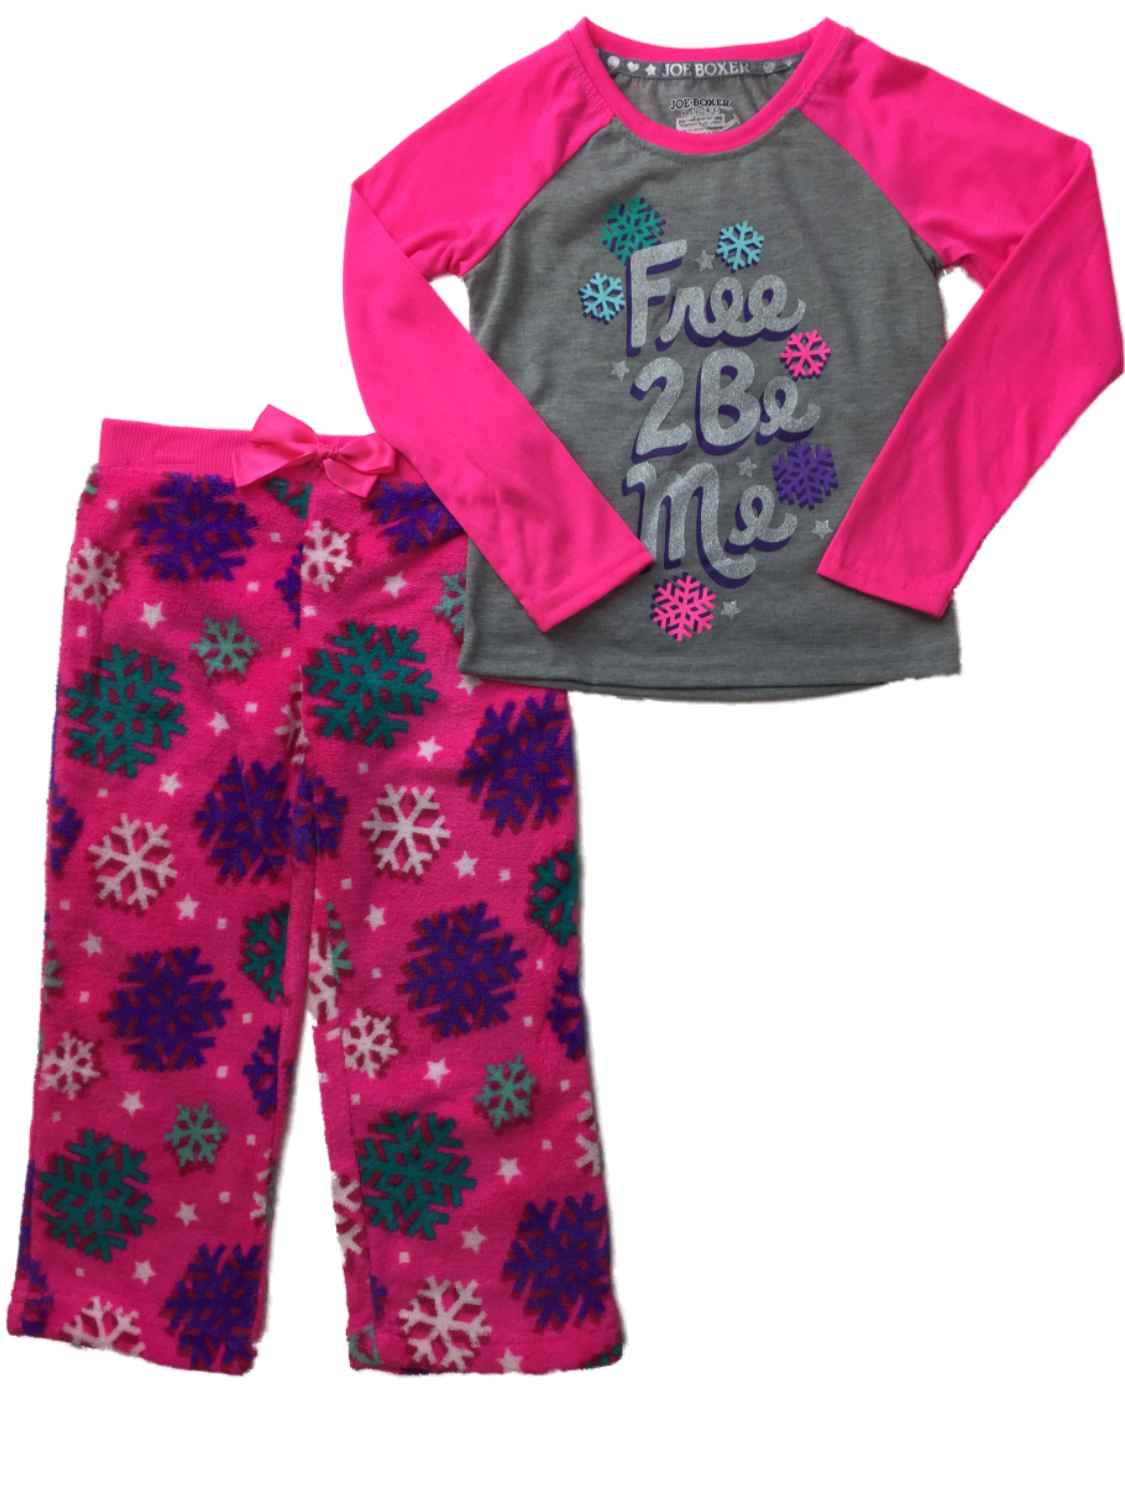 Joe Boxer Girls Pink Free To Be Me Glitter Snowflakes Pajamas Fuzzy Sleep Set XS 4-5